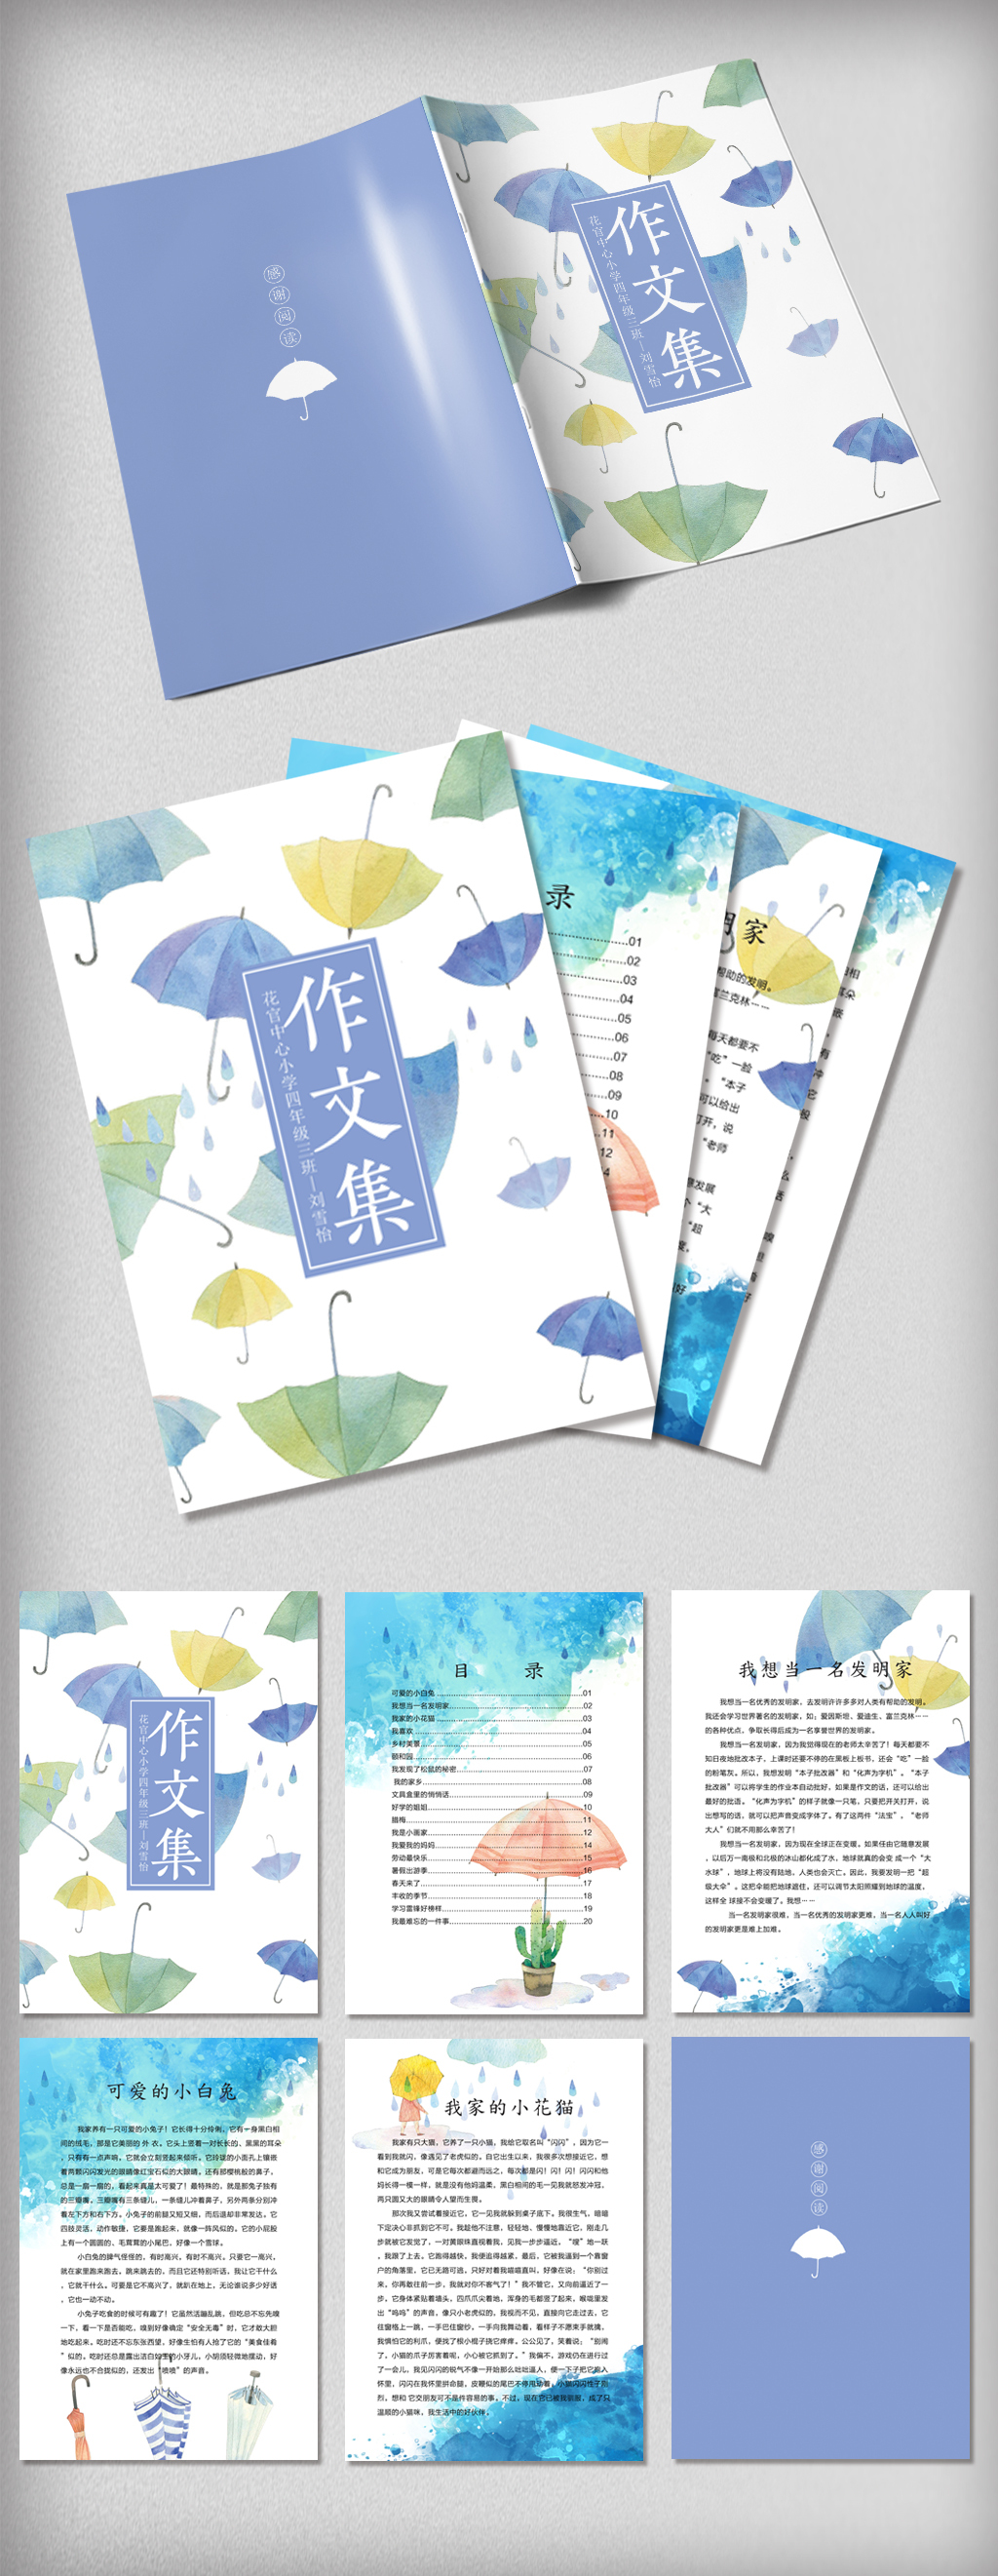 水彩雨伞系列中小学生作文集图片素材